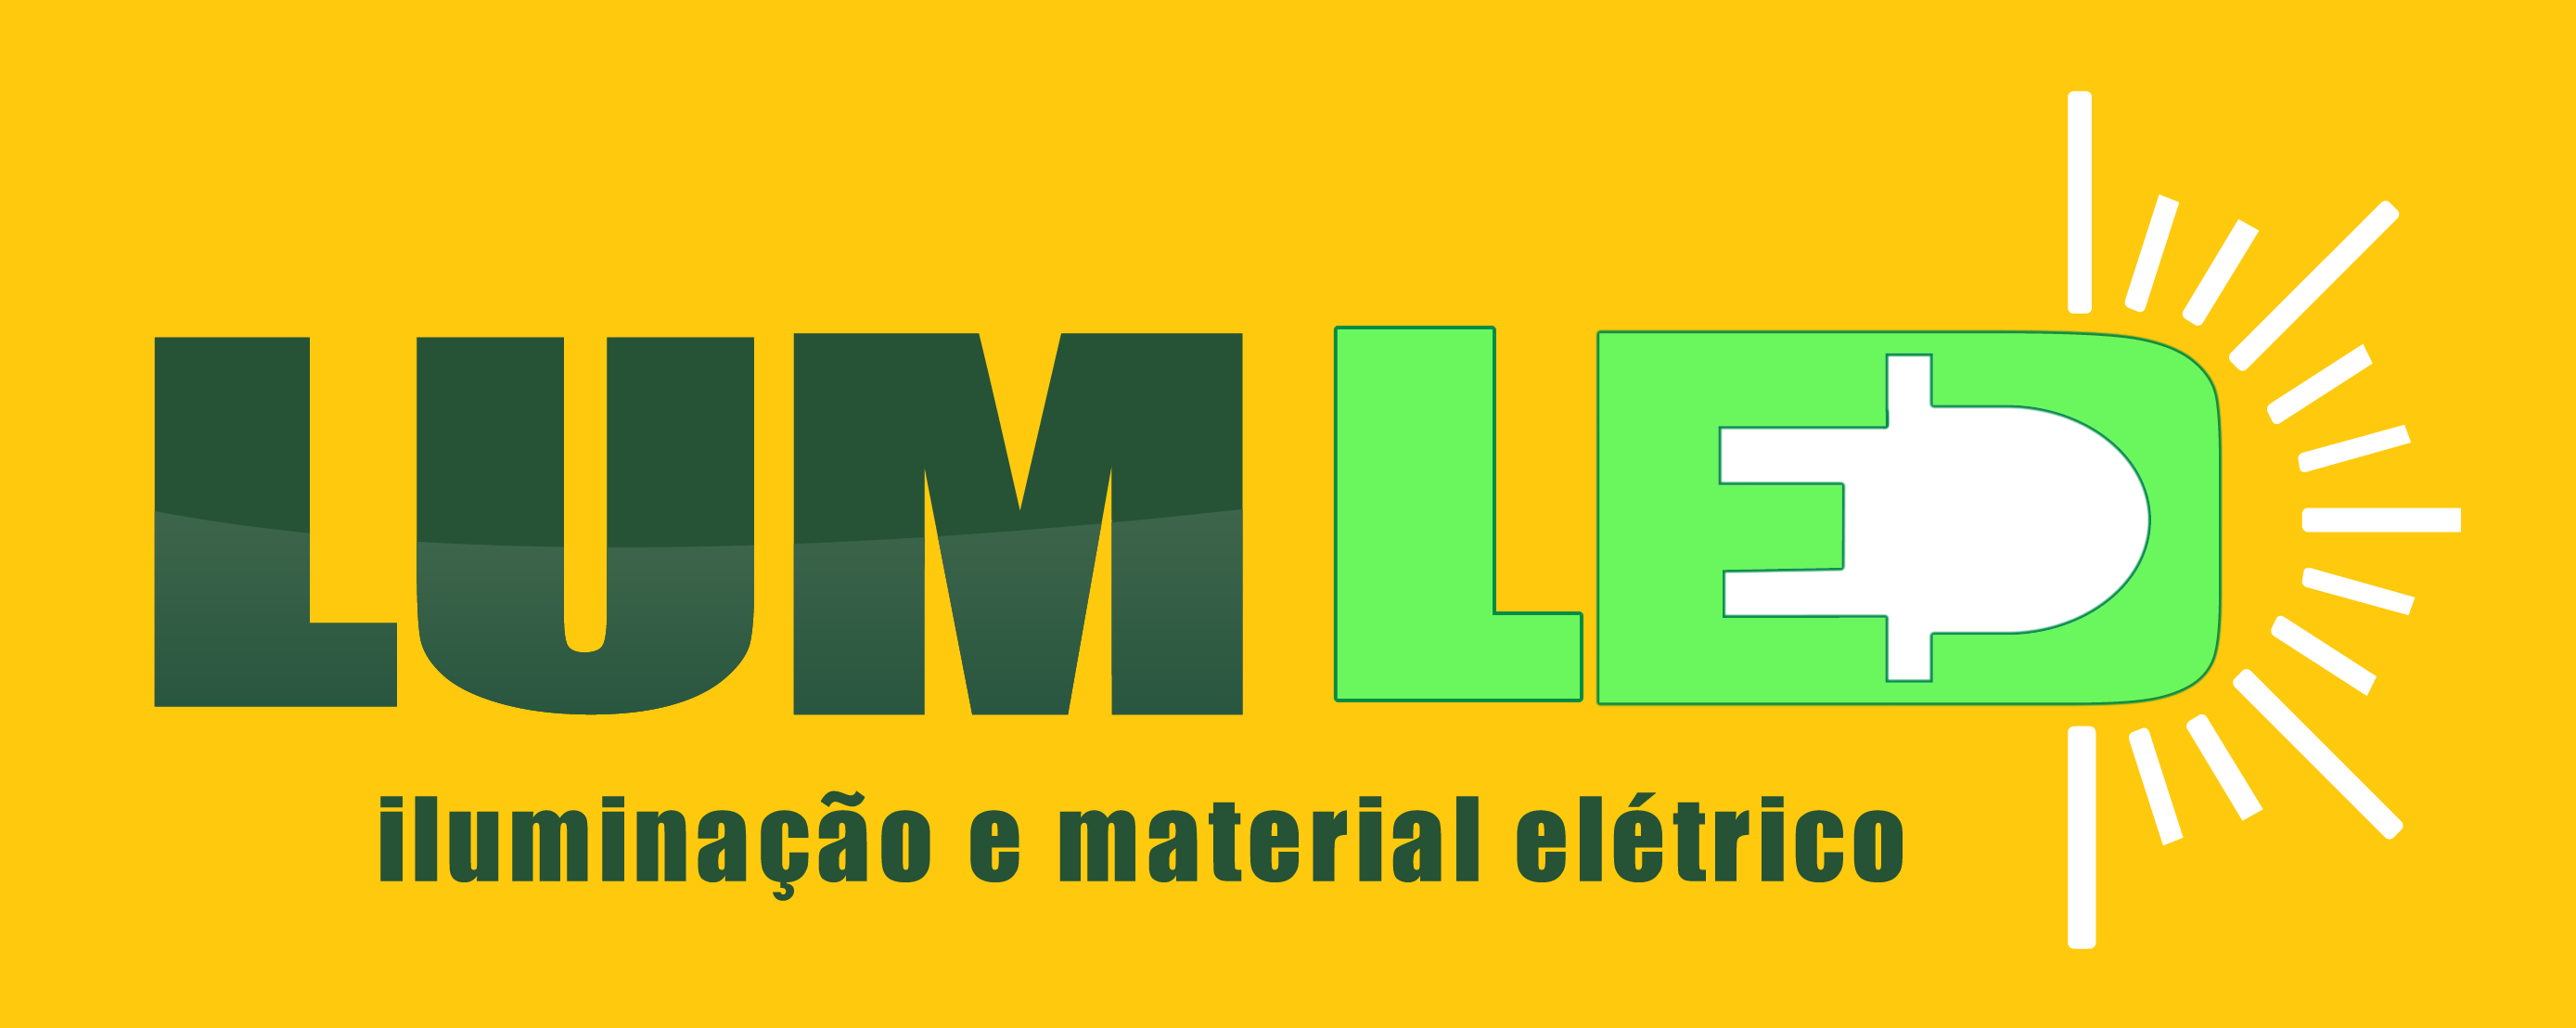 LUMLED - Iluminação - Artigos - Atacado e Fabricação - Curitiba, PR